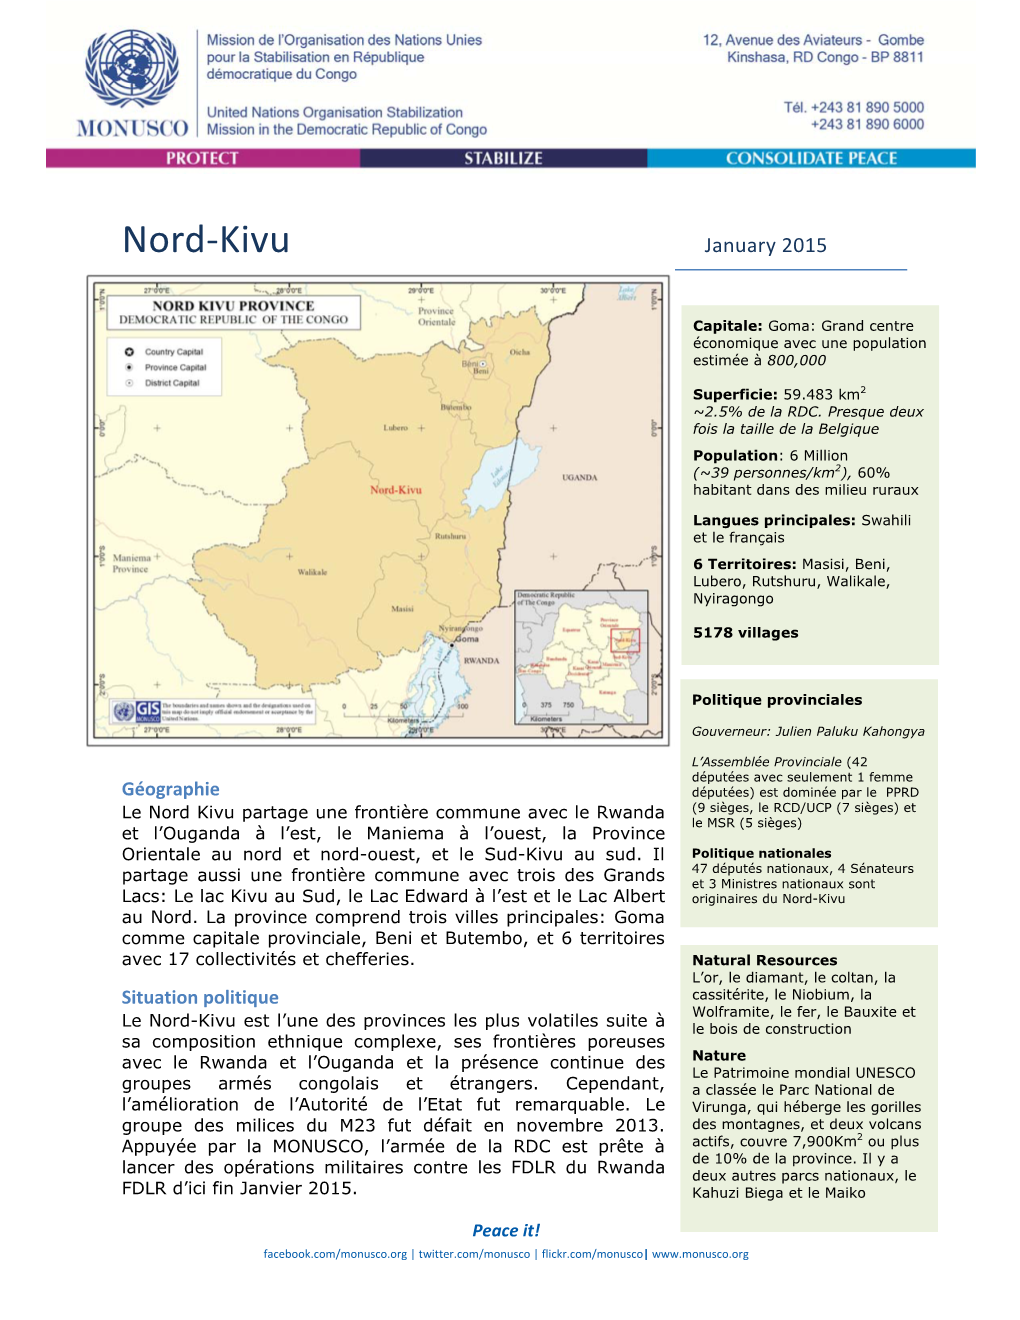 Nord Kivu Factsheet